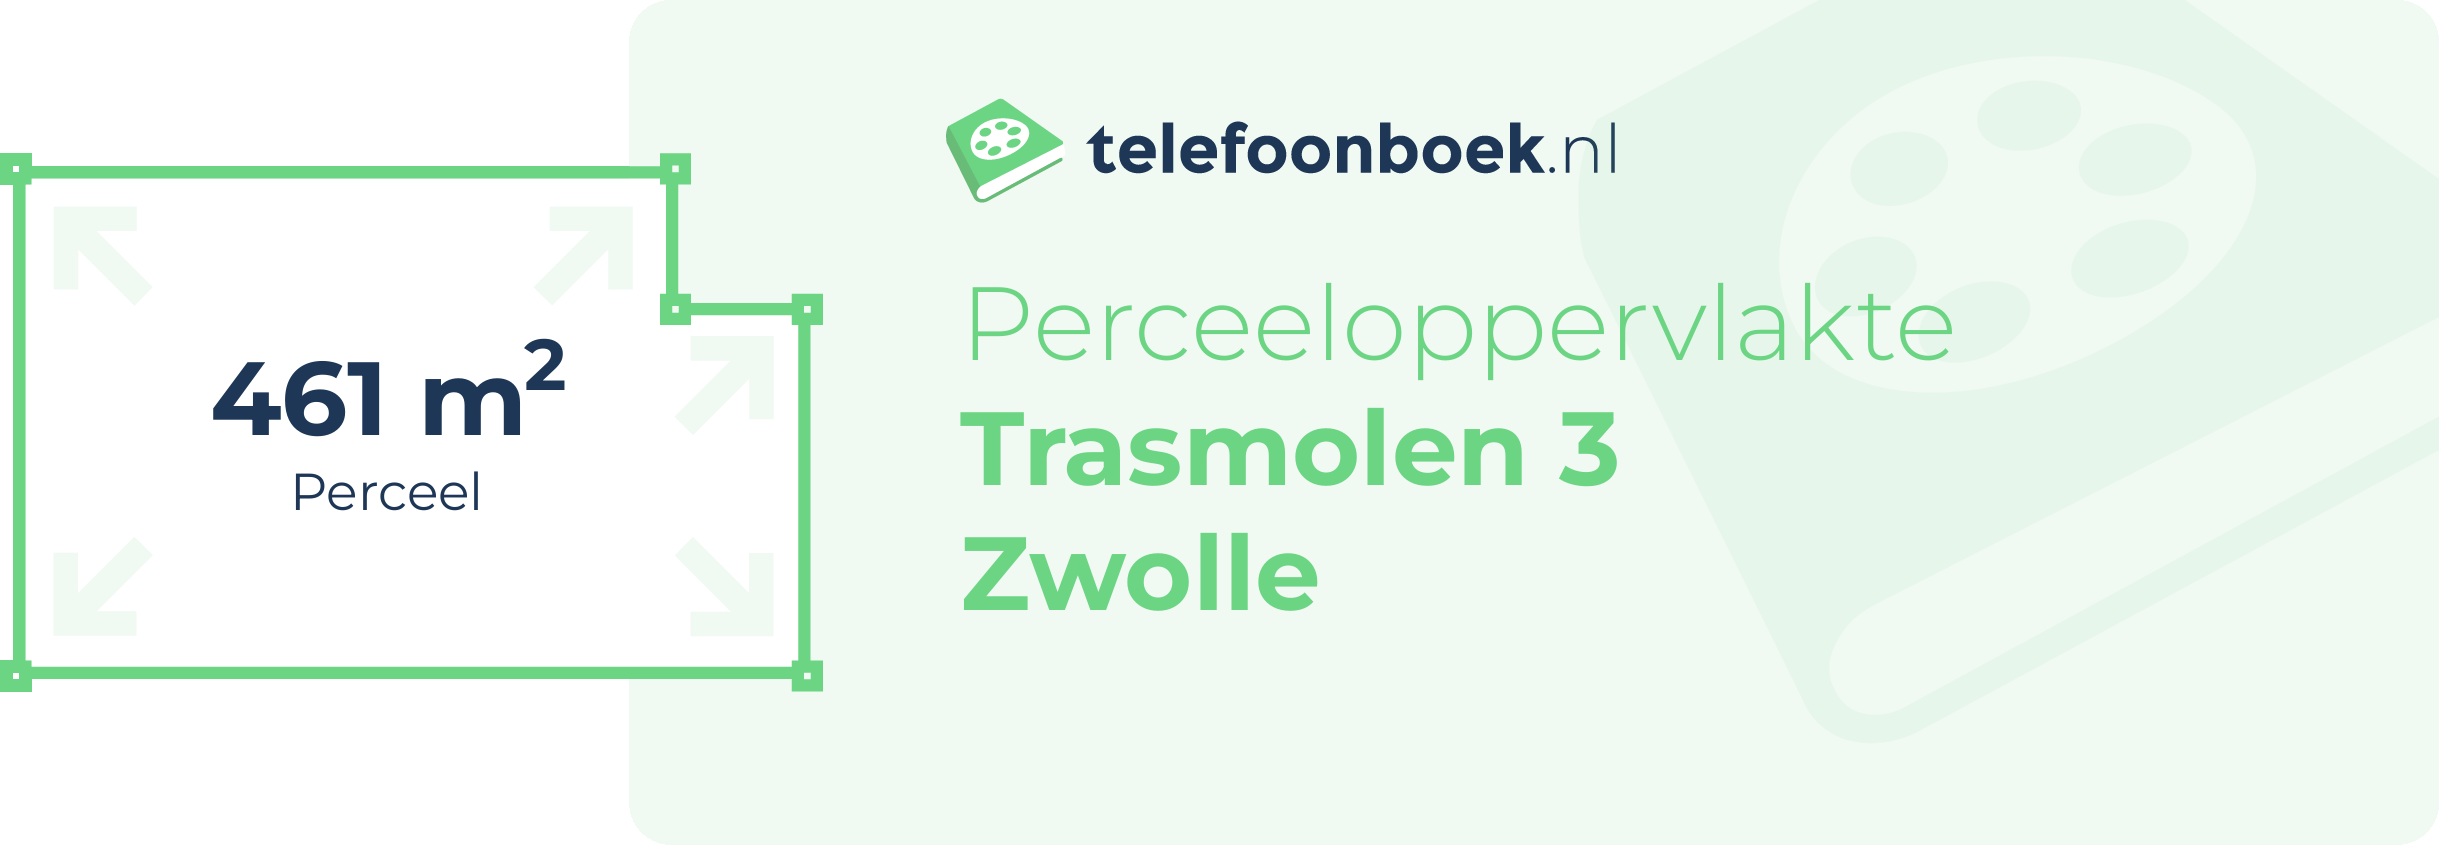 Perceeloppervlakte Trasmolen 3 Zwolle